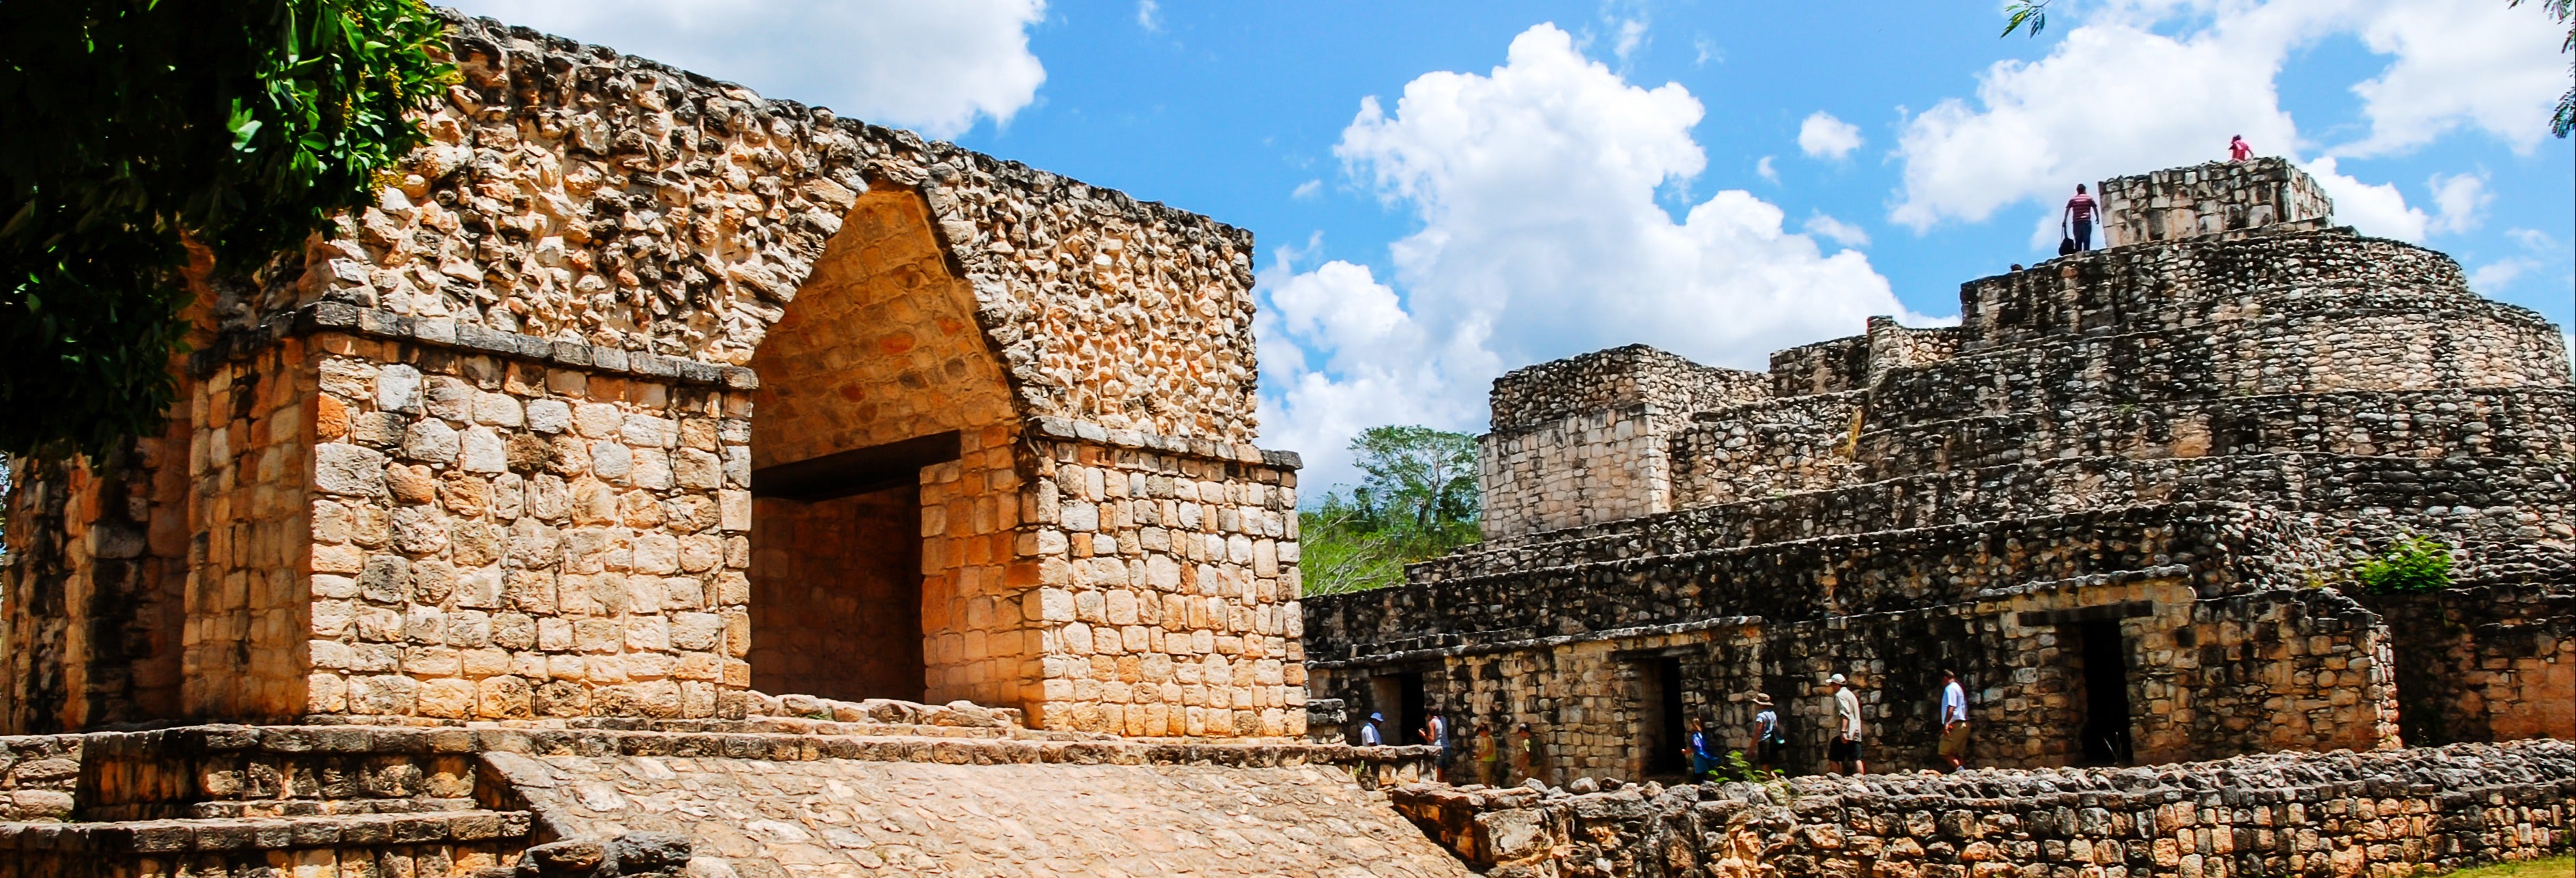 Excursão a Chichén Itzá, Cobá e cenote Ik-Kil